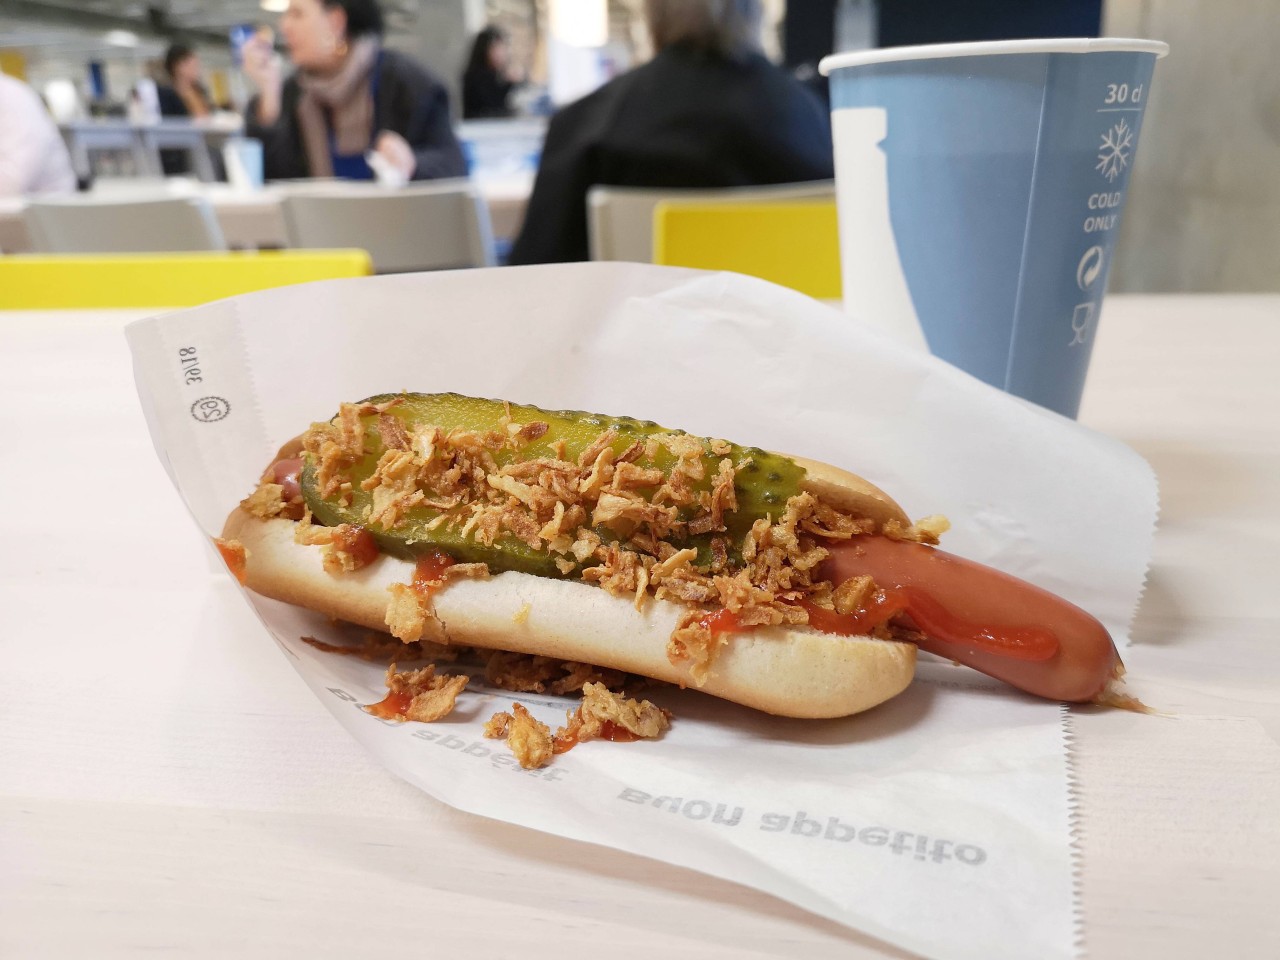 Ikea: Viele Kunden kaufen sich nach ihrem Besuch beim Möbelhaus noch einen Hot Dog. (Symbolbild)